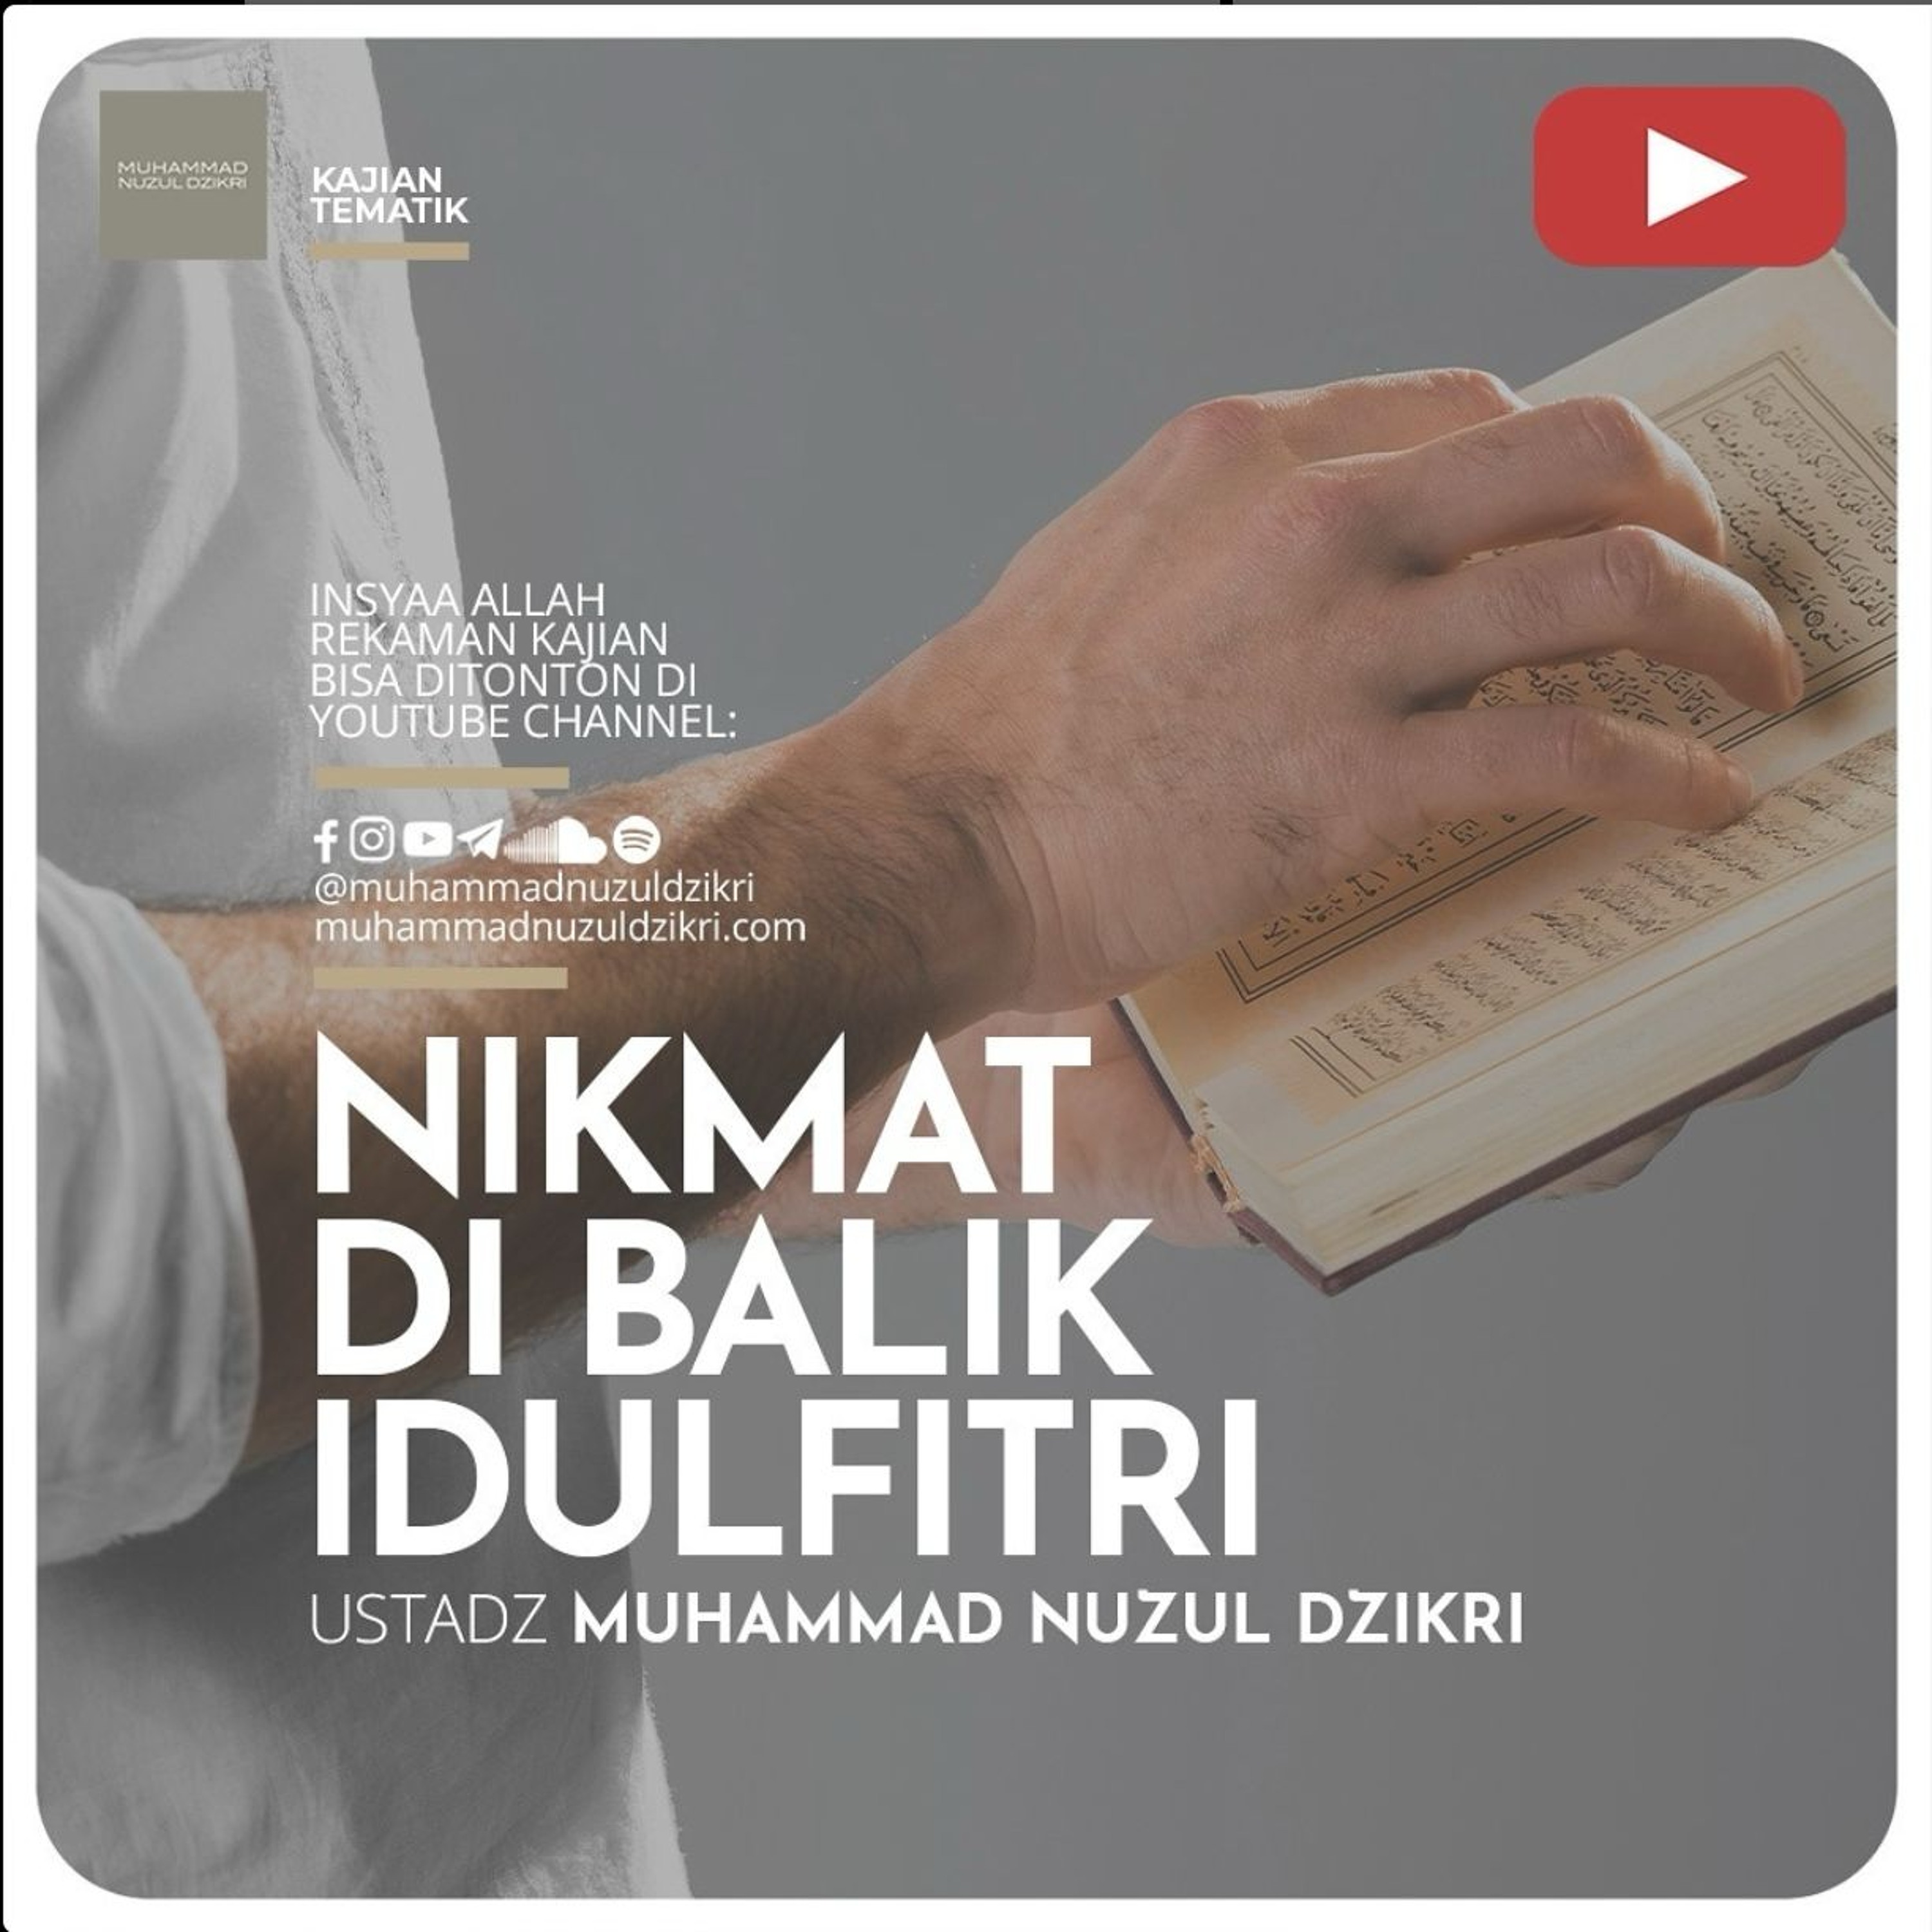 Kajian Tematik Syawwal 05. ”NIKMAT DI BALIK IDULFITRI” - Ustadz Muhammad Nuzul Dzikri